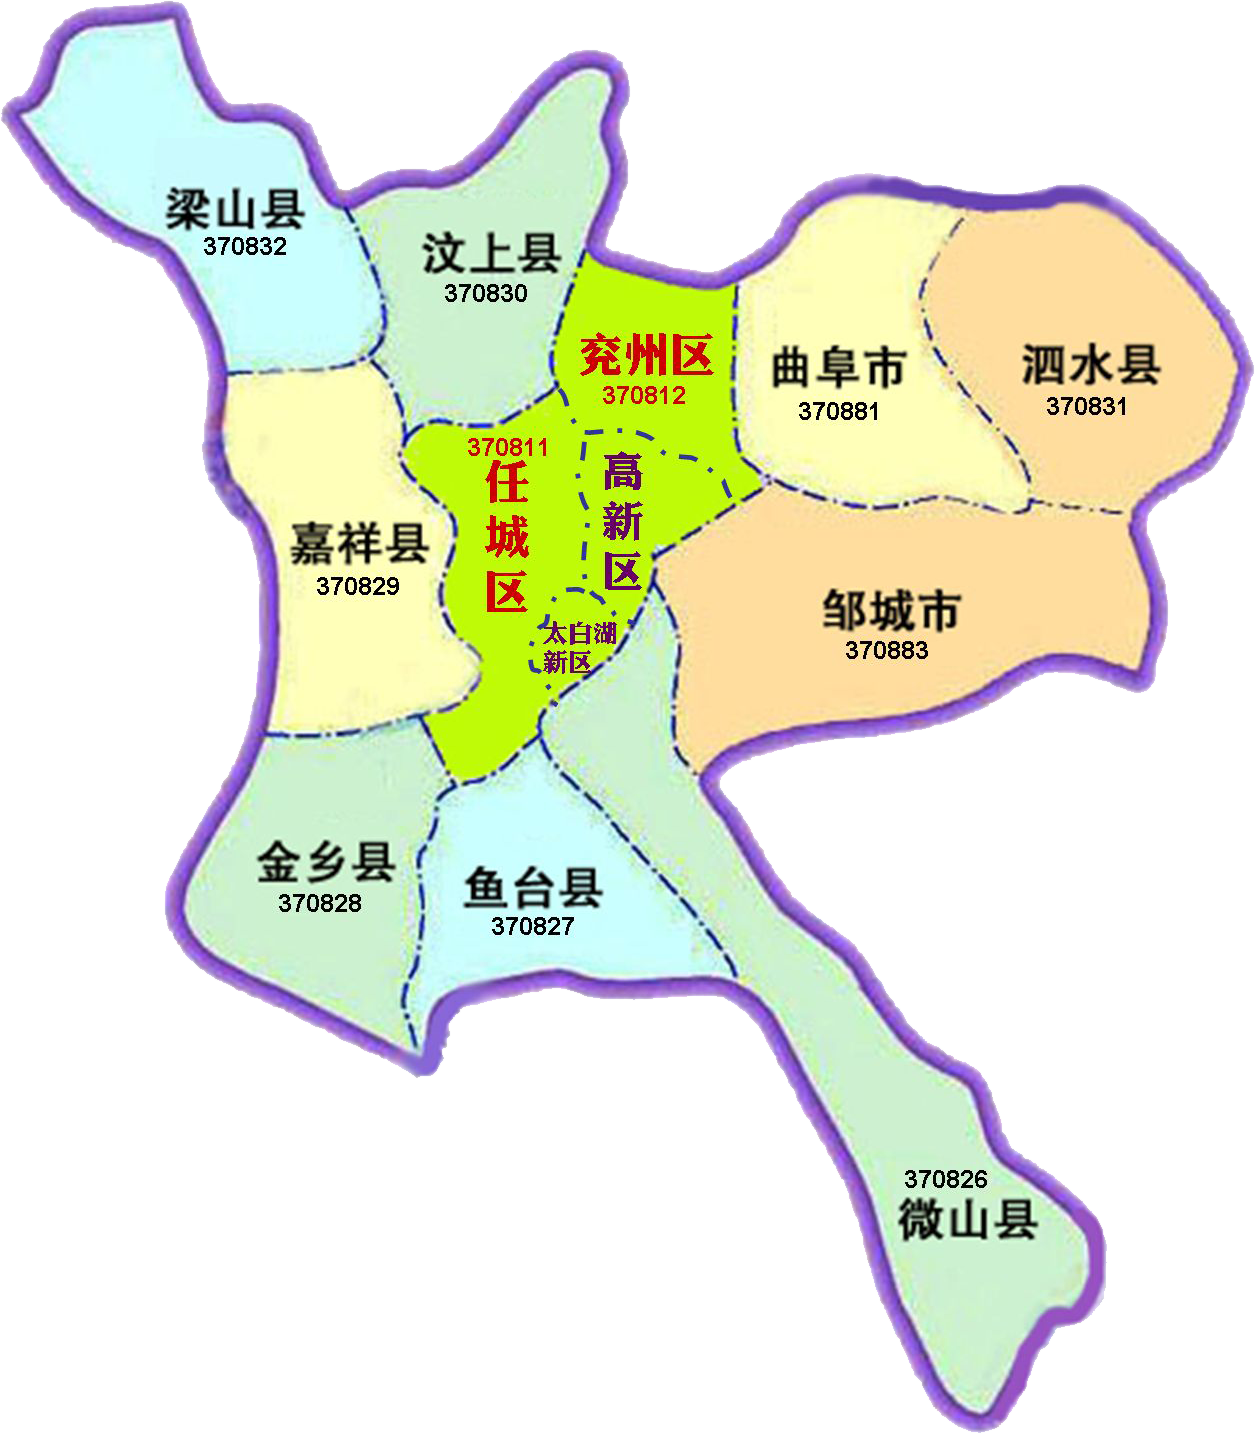 西与菏泽接壤,南面是枣庄市和江苏省徐州市,北面与泰安市交界,西北角图片